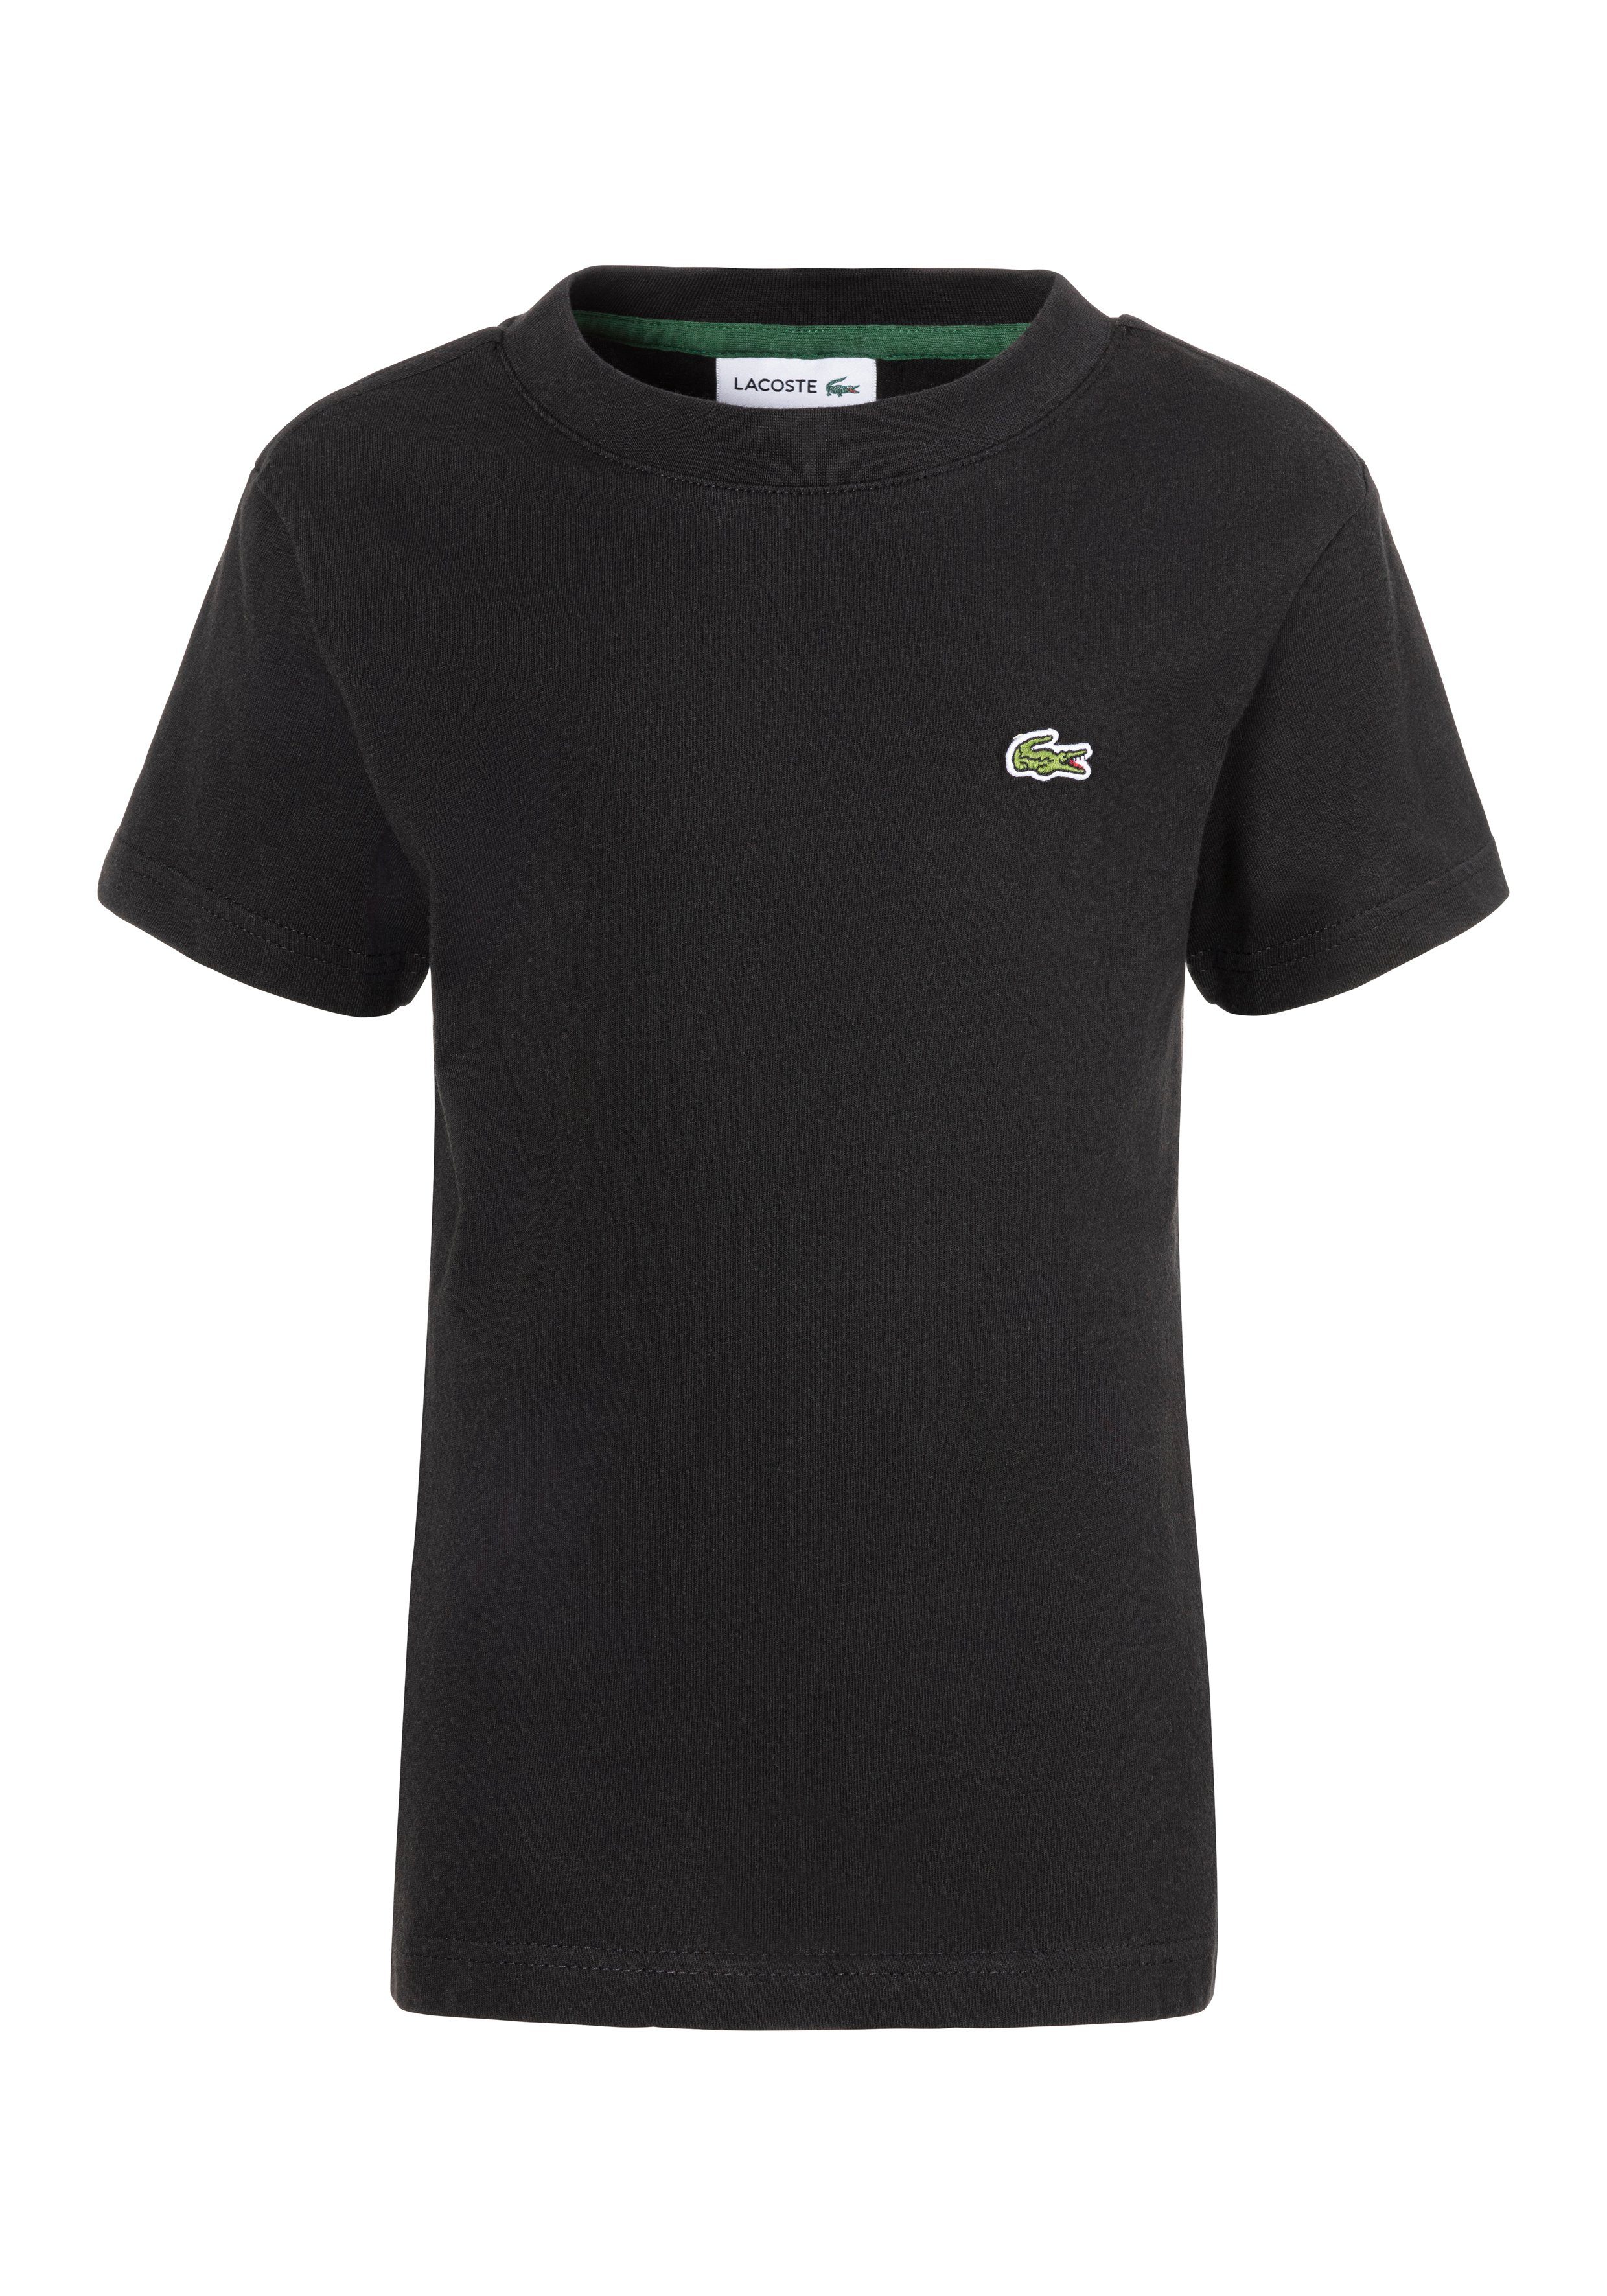 Lacoste T-shirt met logo zwart Biologisch katoen Ronde hals Logo 140